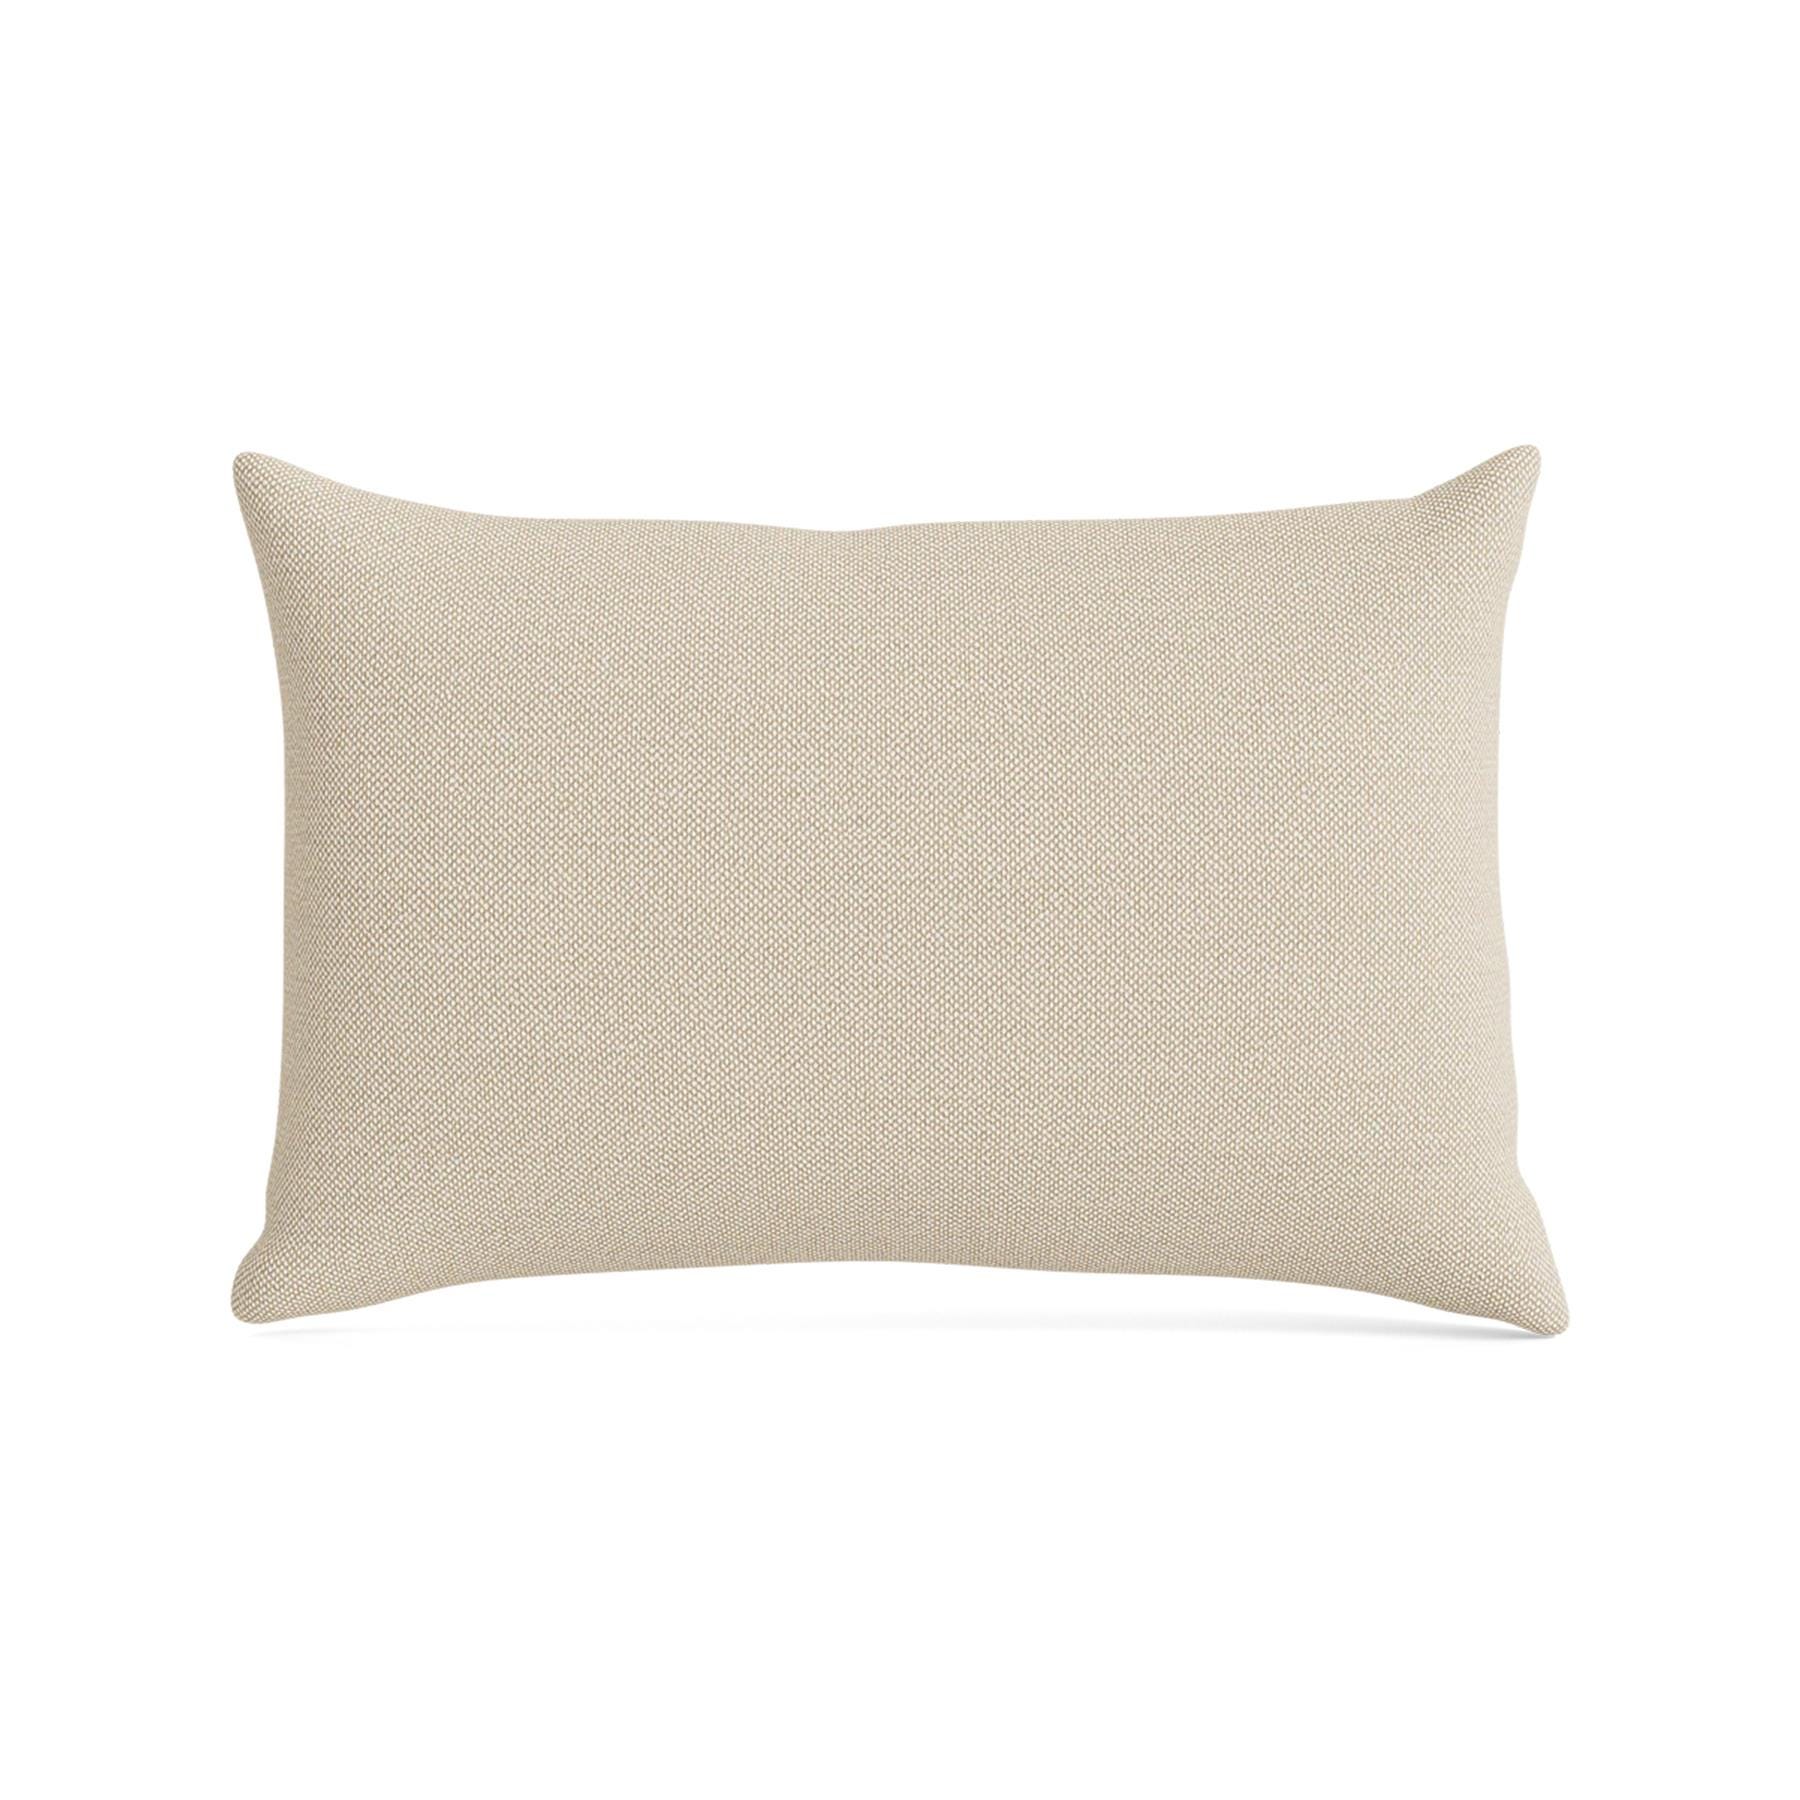 Make Nordic Pillow 40cmx60cm Hallingdal 200 Down And Fibers Cream